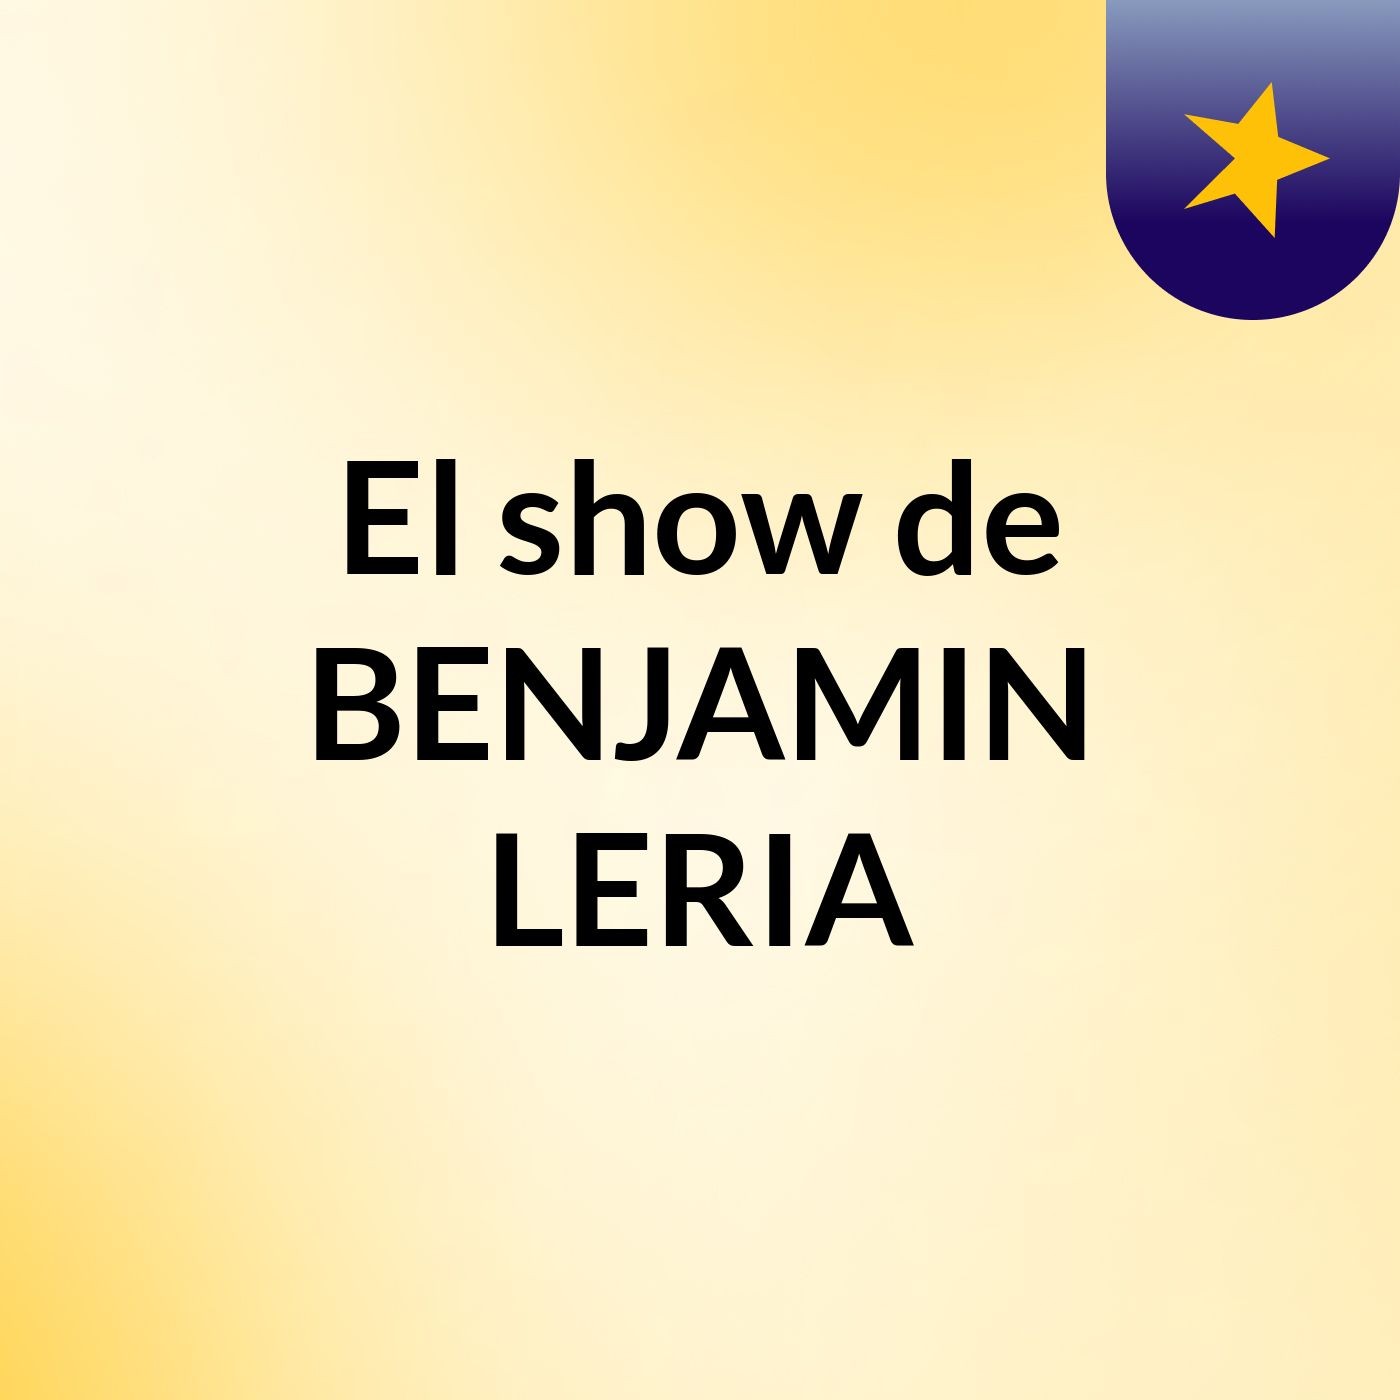 Episodio 5 - El show de BENJAMIN LERIA